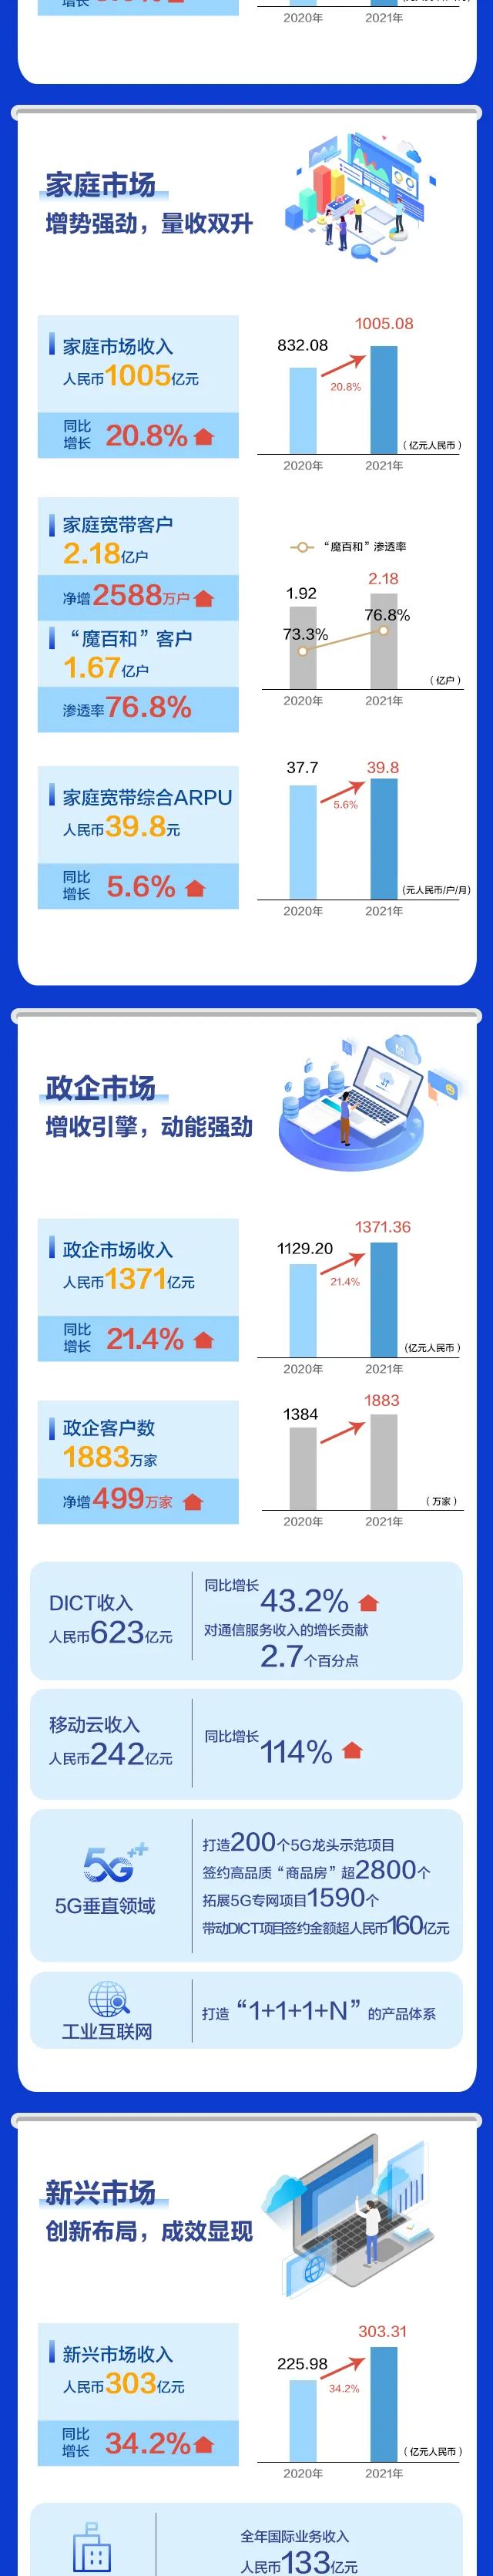 一图读懂中国移动2021年全年业绩